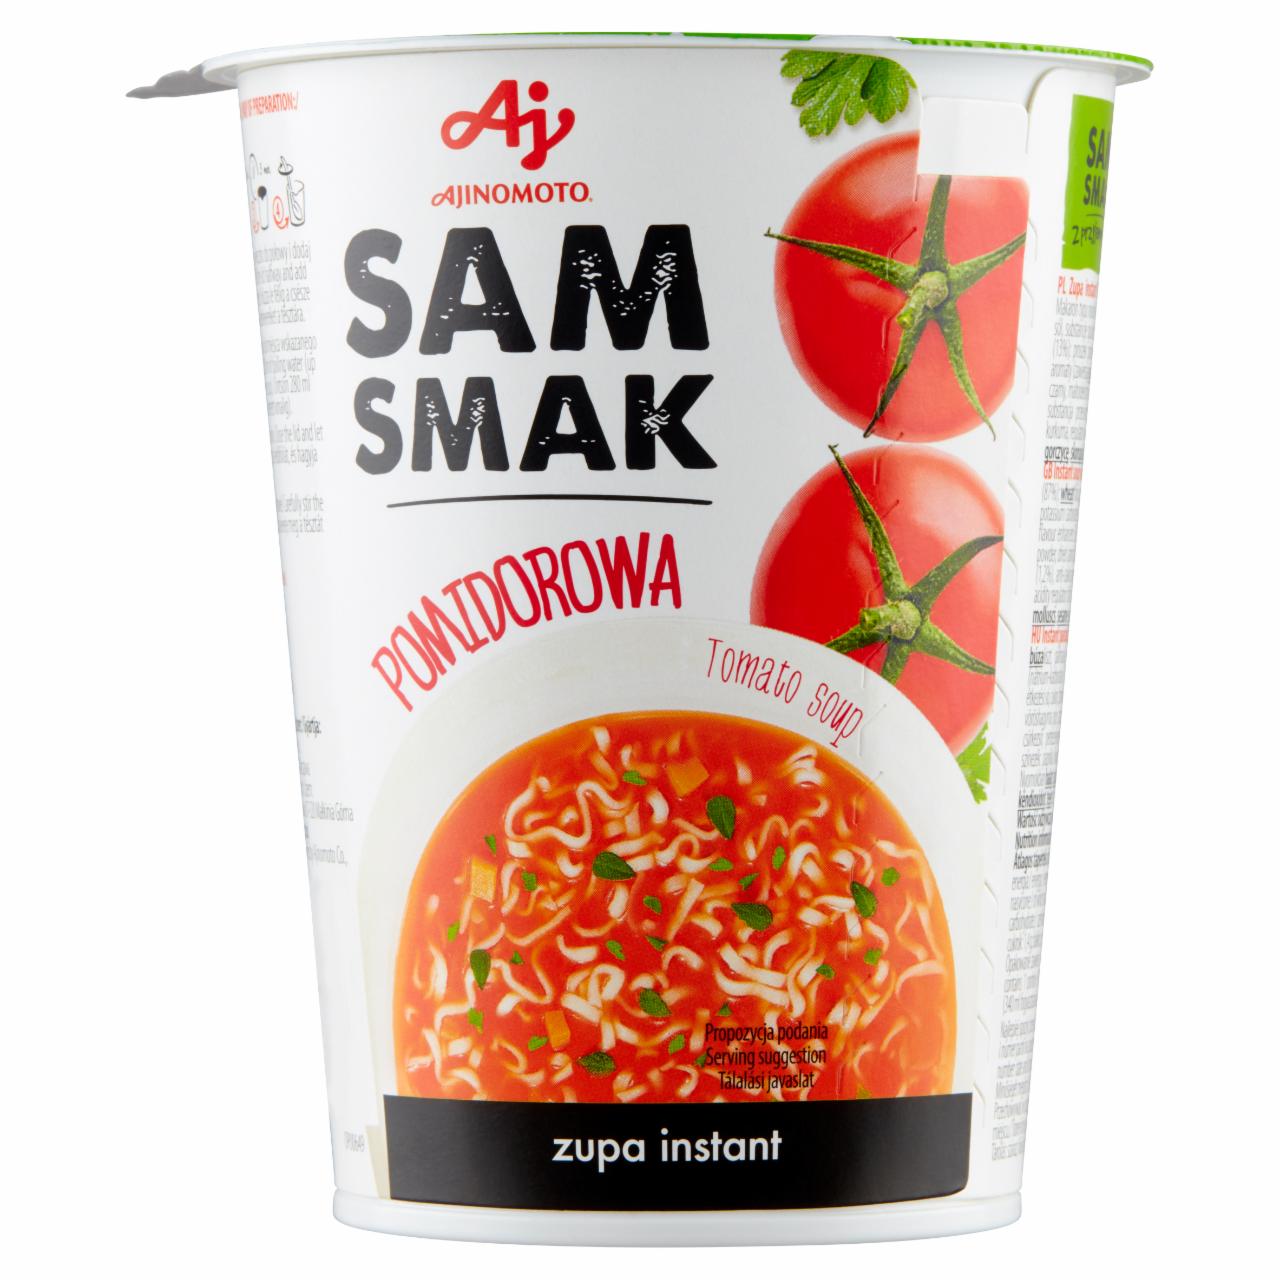 Zdjęcia - SamSmak Zupa instant pomidorowa 62 g